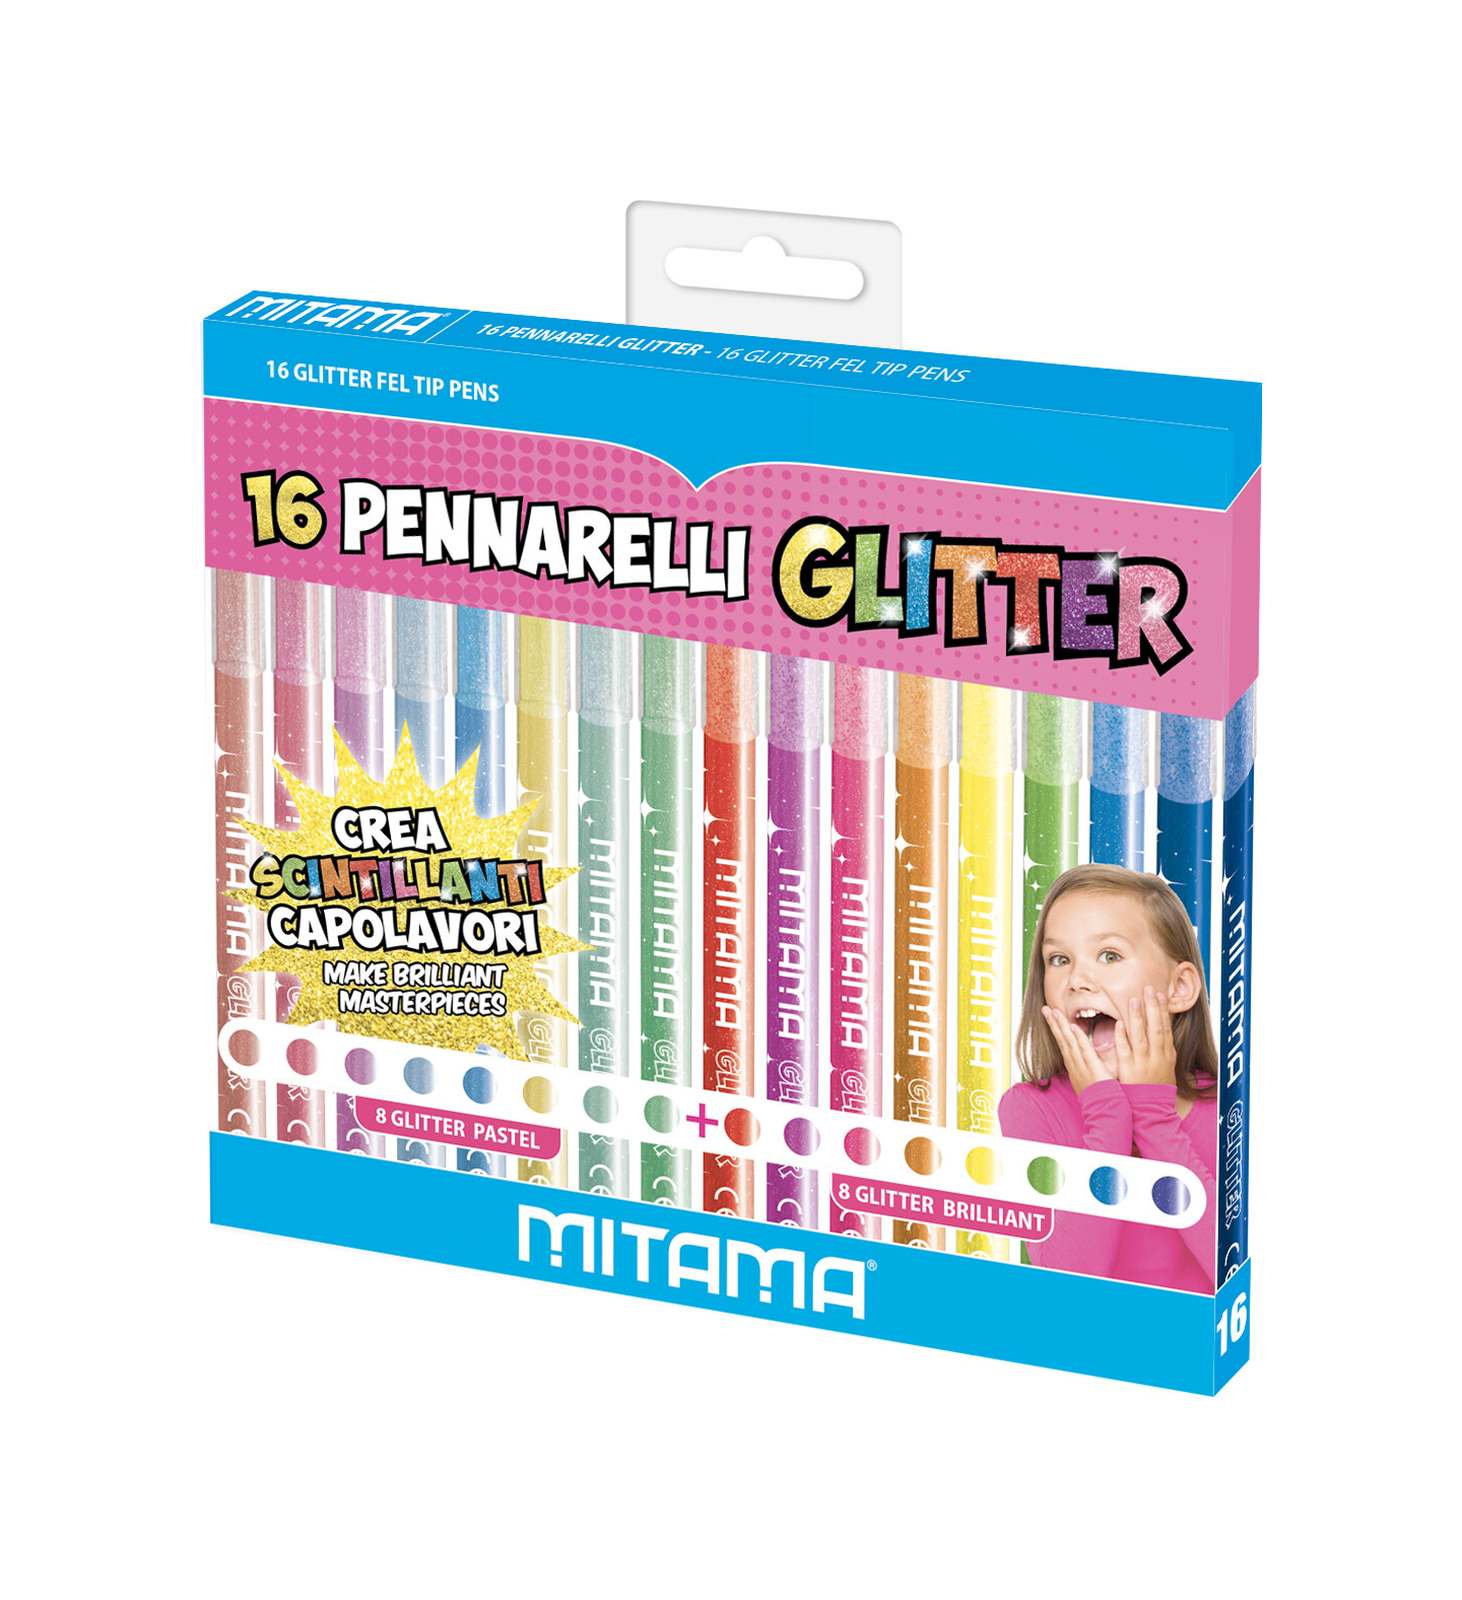 Pennarelli glitter triangolari, confezioni 16 pz (8 pastel + 8 brillanti) -  Toys Center